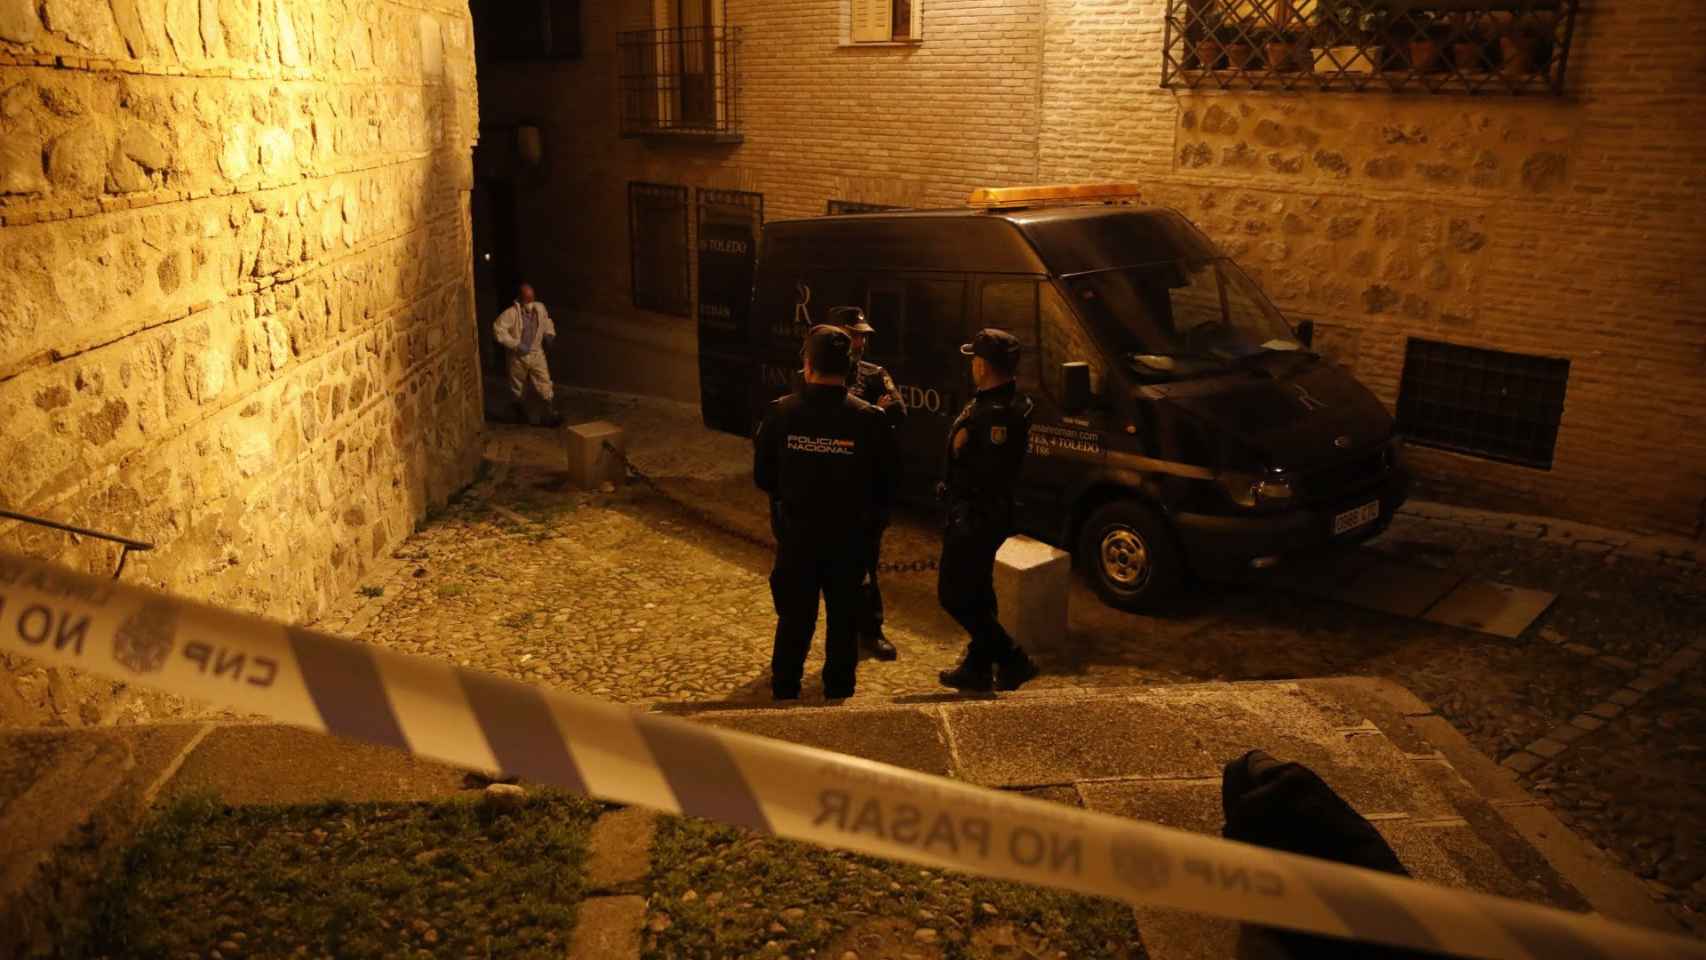 Encuentran cuatro cadáveres en una vivienda del Casco Histórico de Toledo